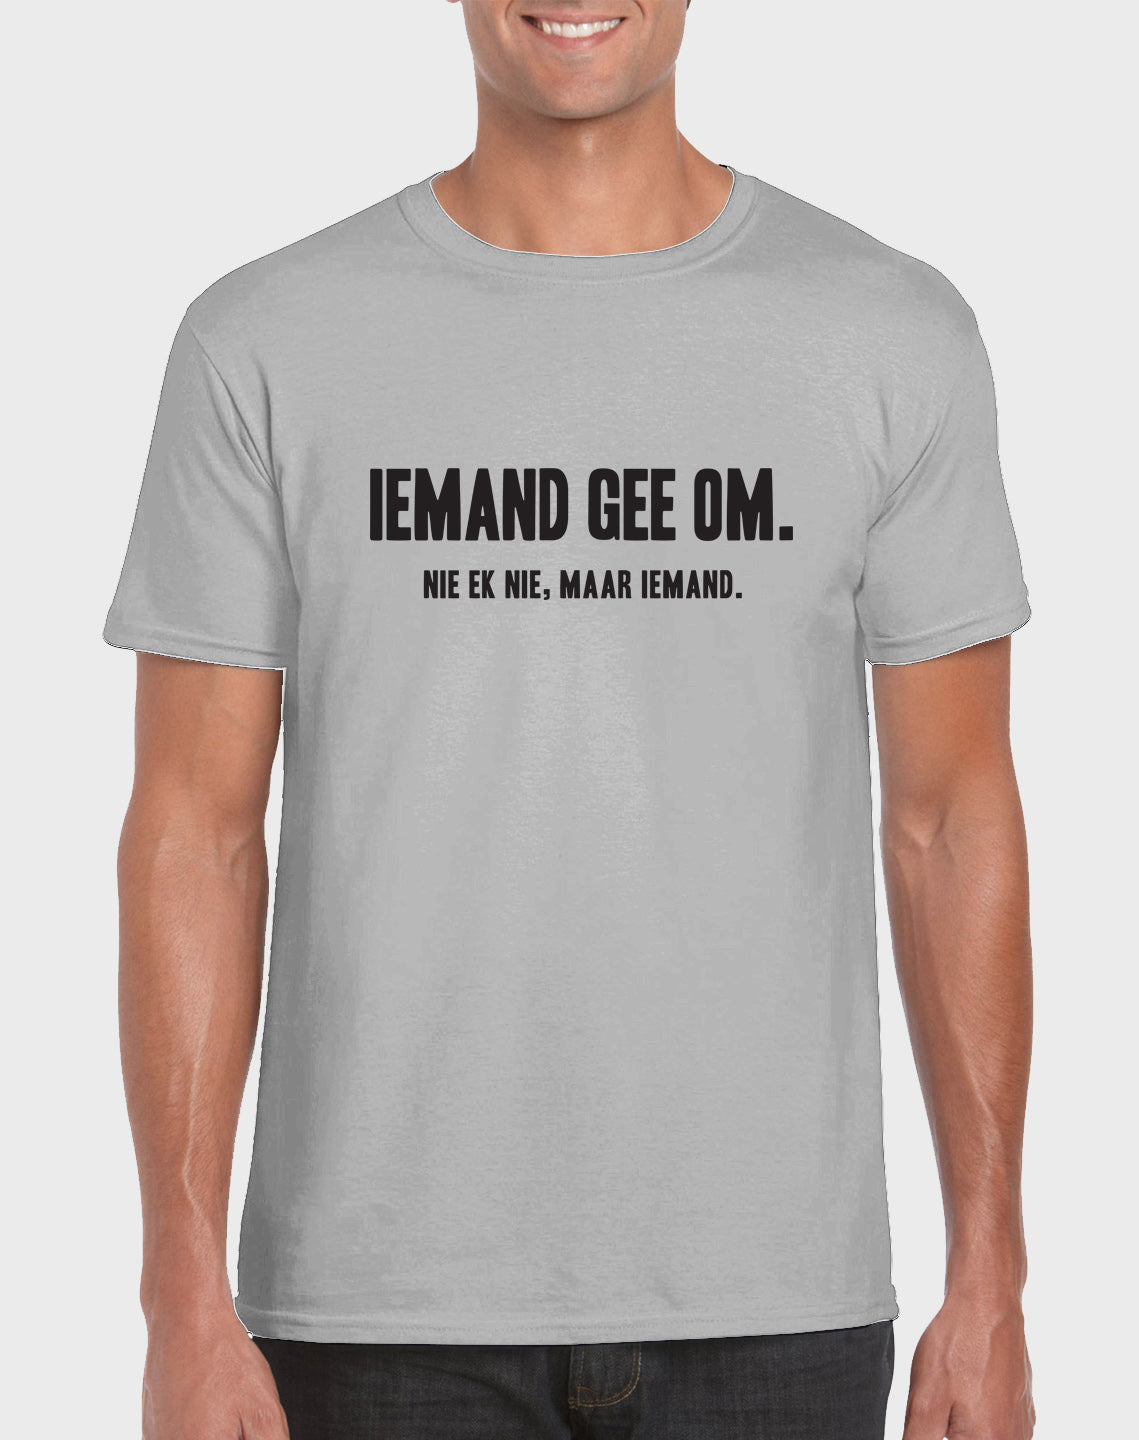 Afrilol Iemand gee om Men's T-shirt - komedie